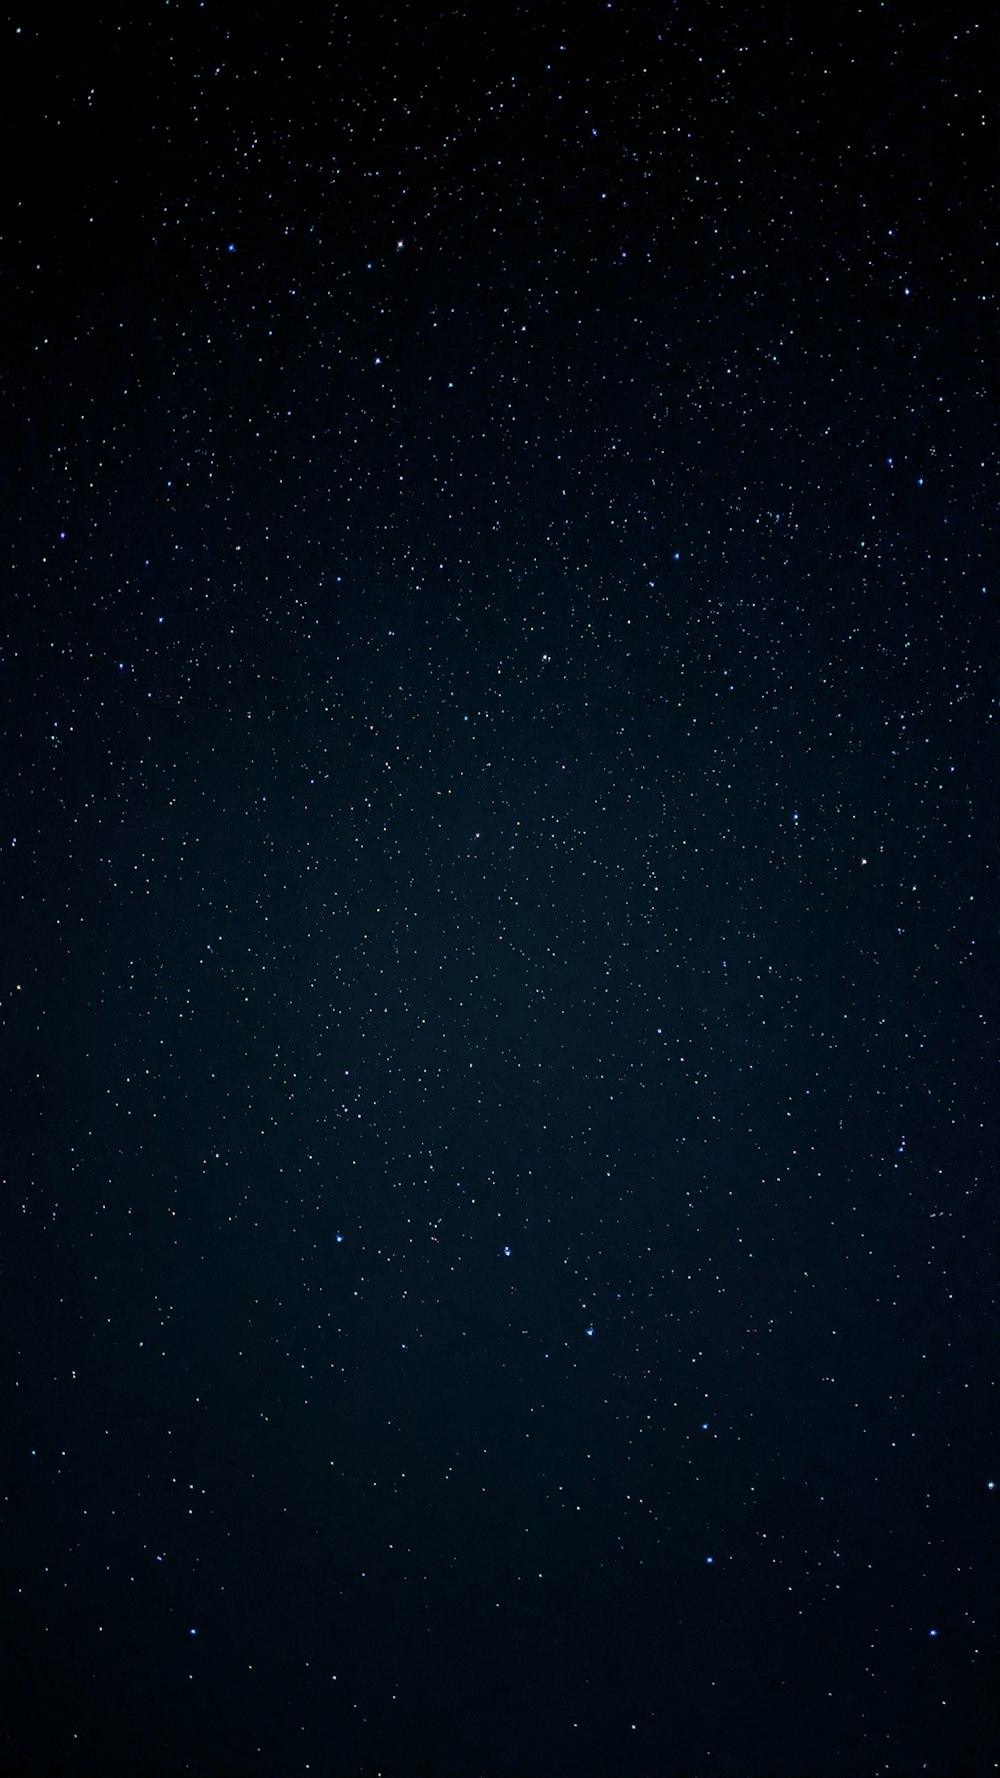 stelle bianche e nere durante la notte